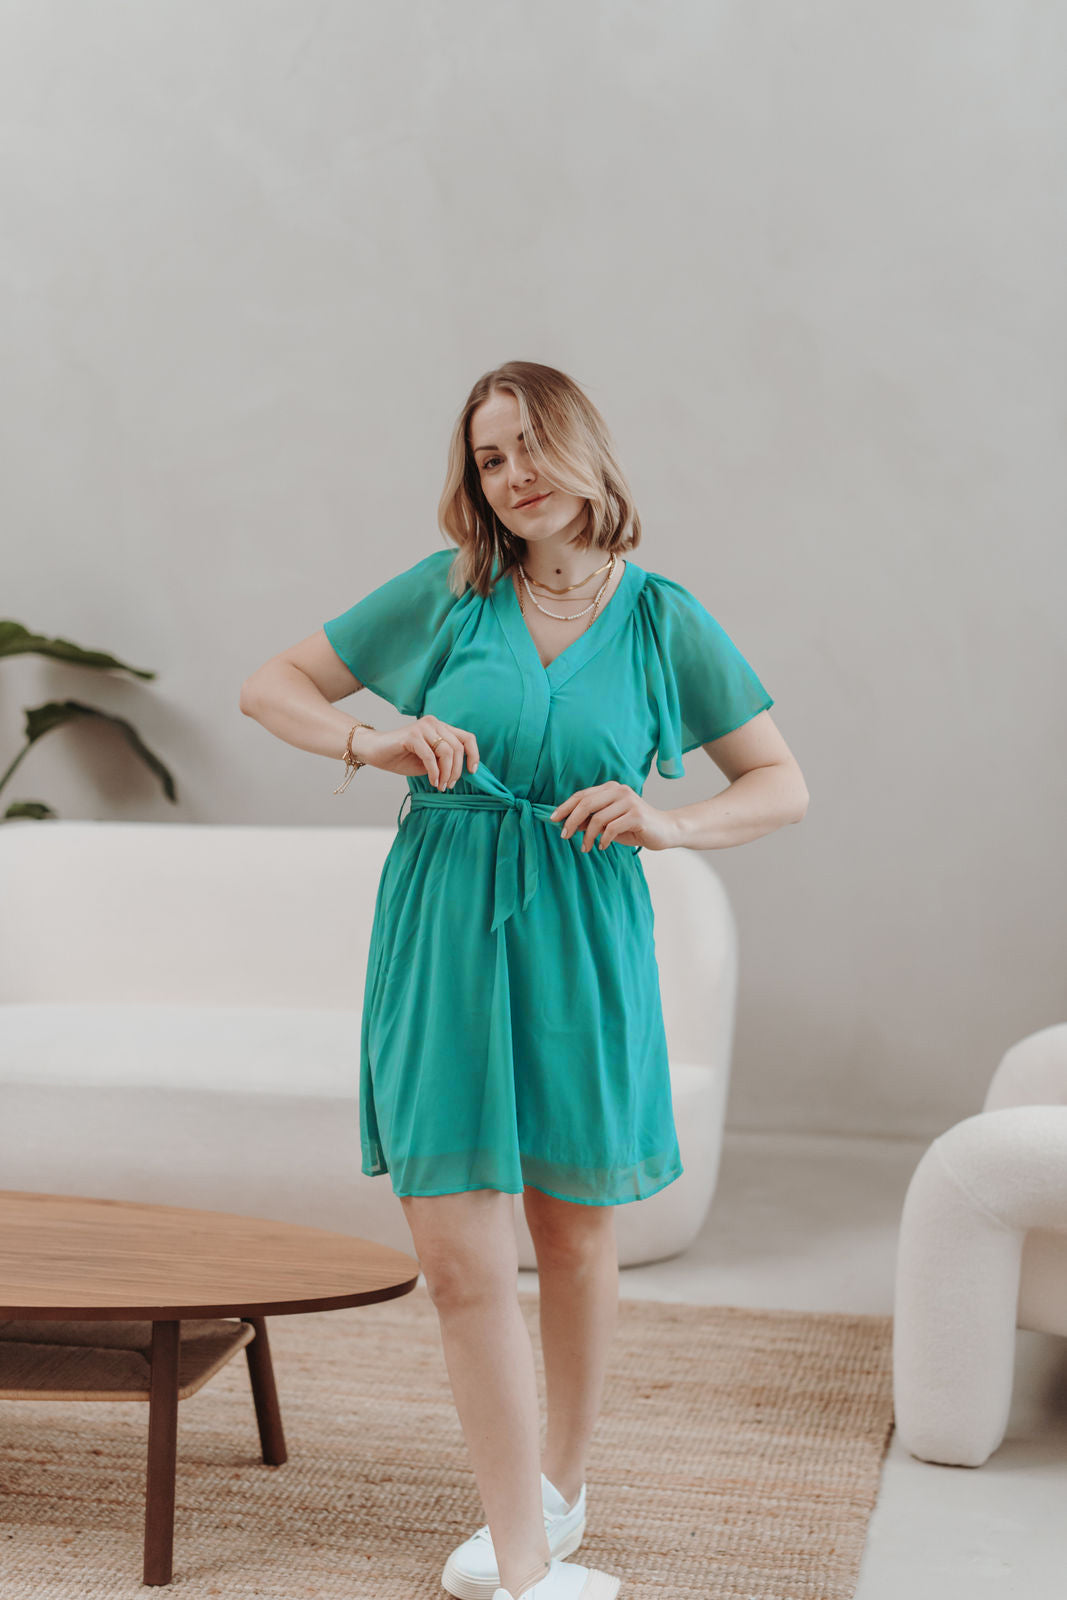 Kurzes Kleid mit V-Ausschnitt (Türkis-Grün)